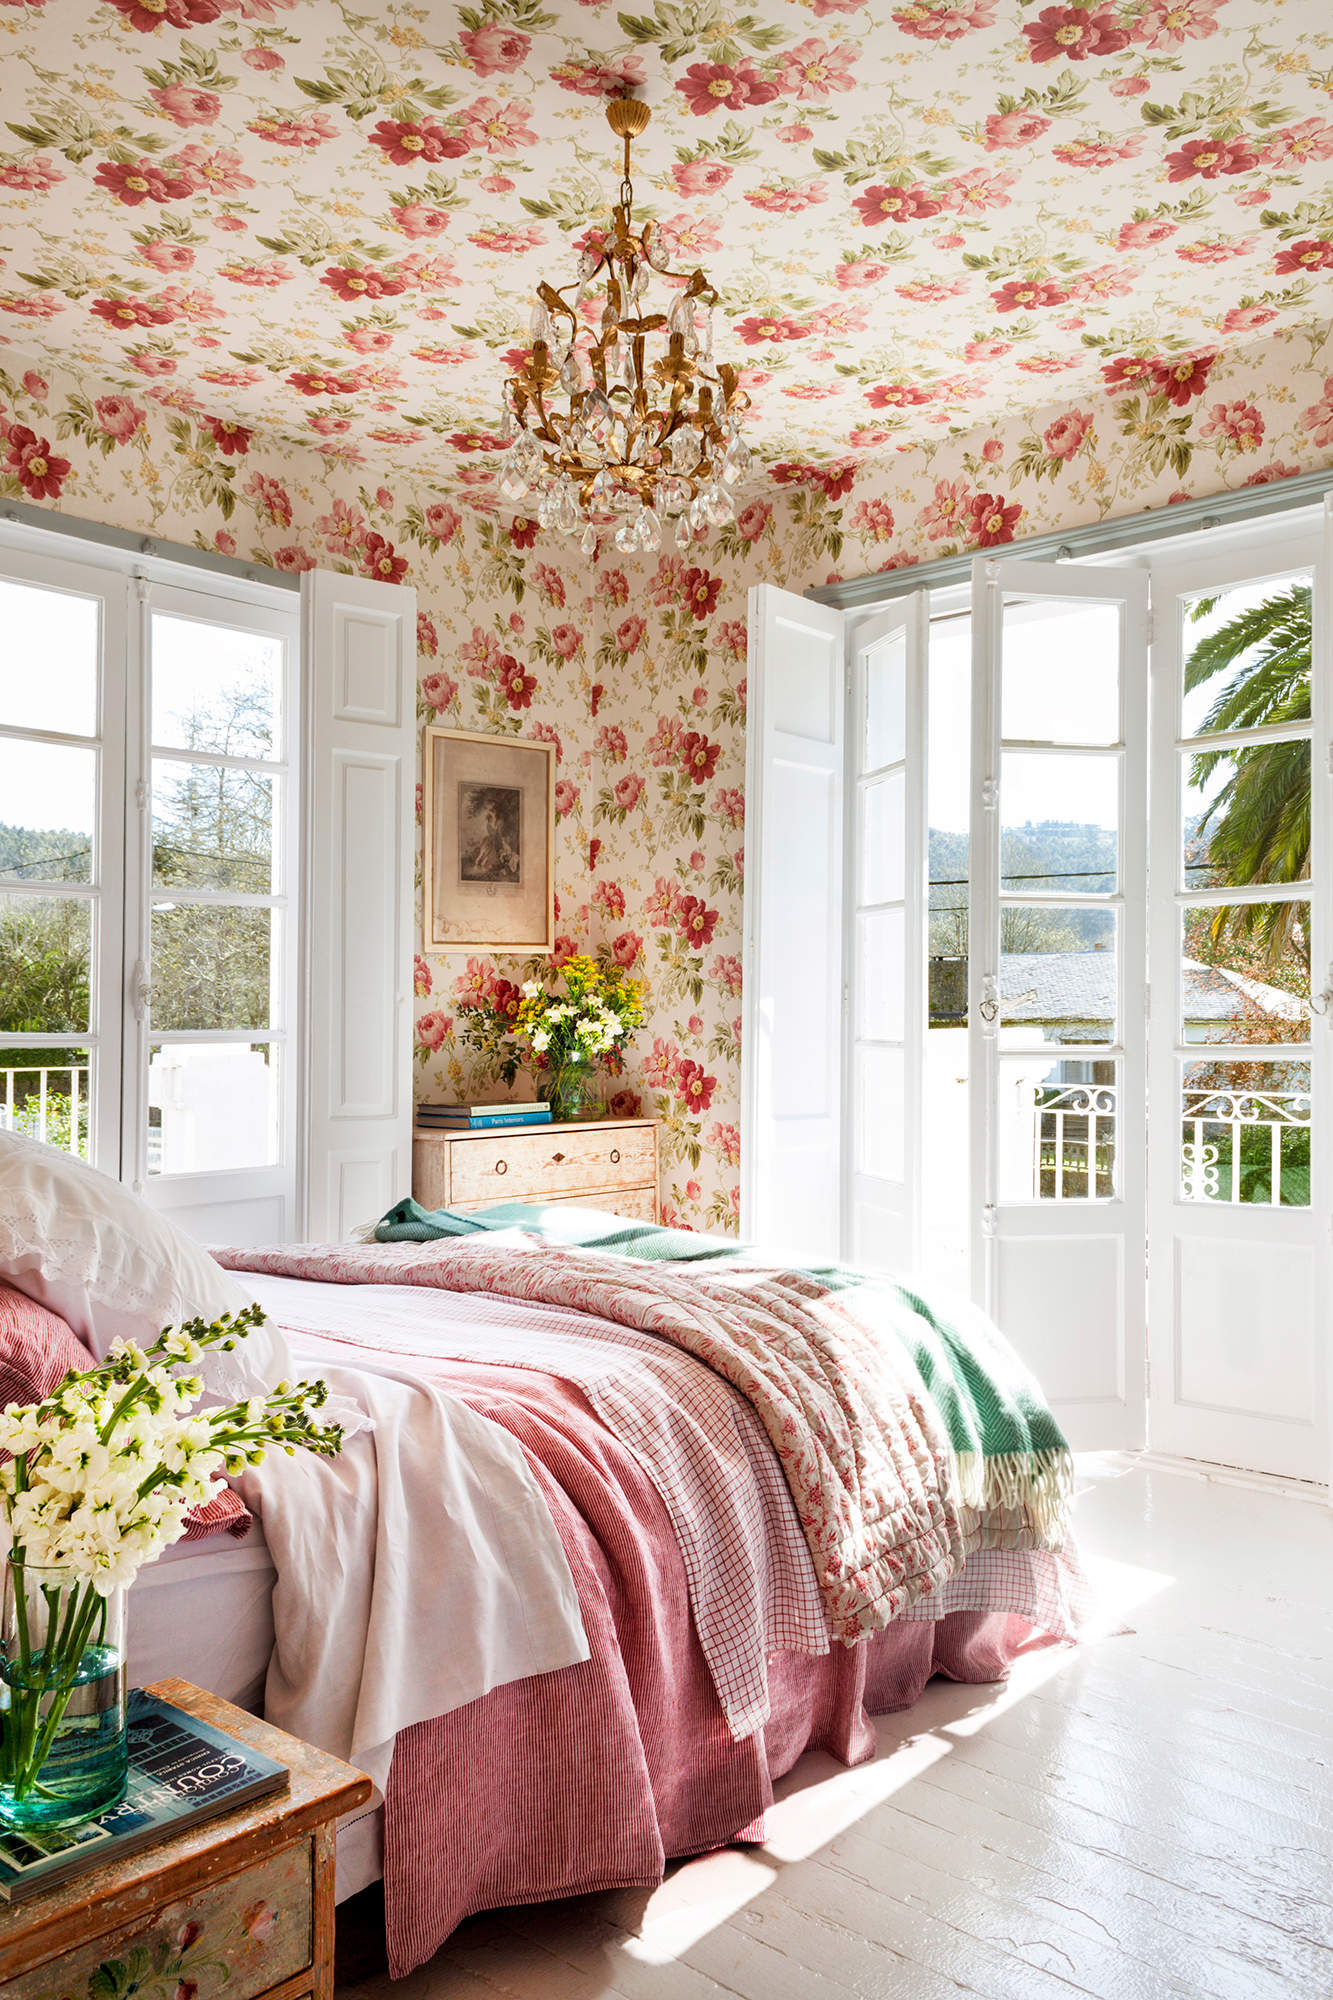 Dormitorio con ventanales y papel pintado de flores en techo y paredes.